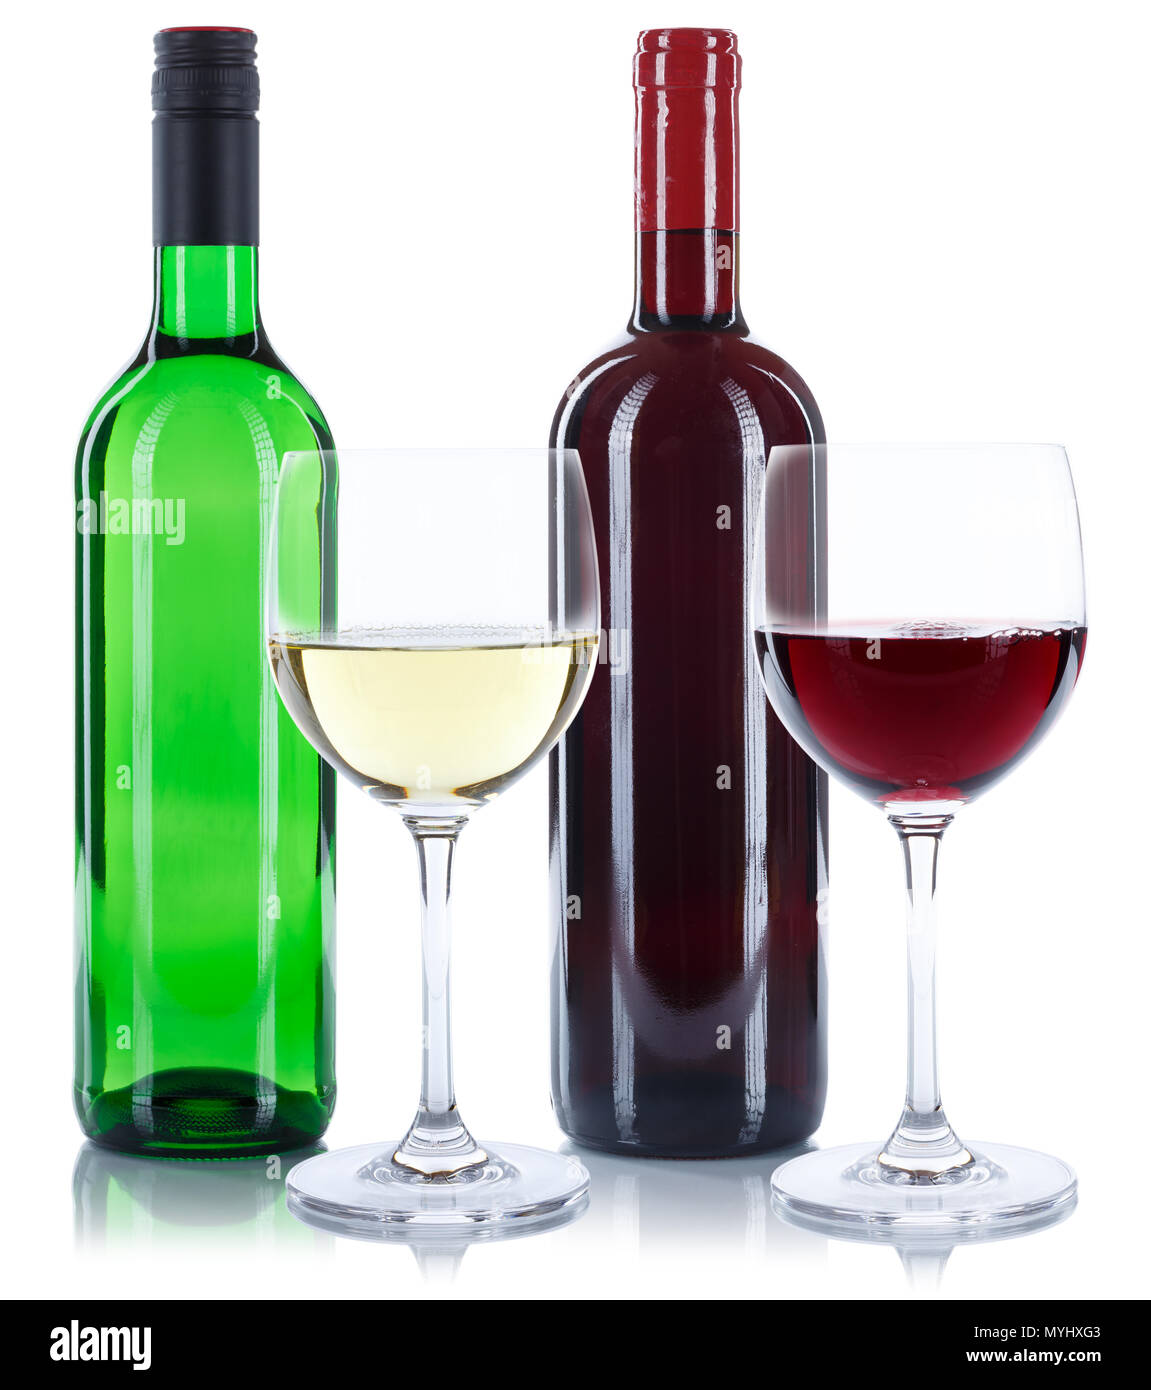 Des bouteilles de vin rouge et blanc verres isolé sur fond blanc Banque D'Images